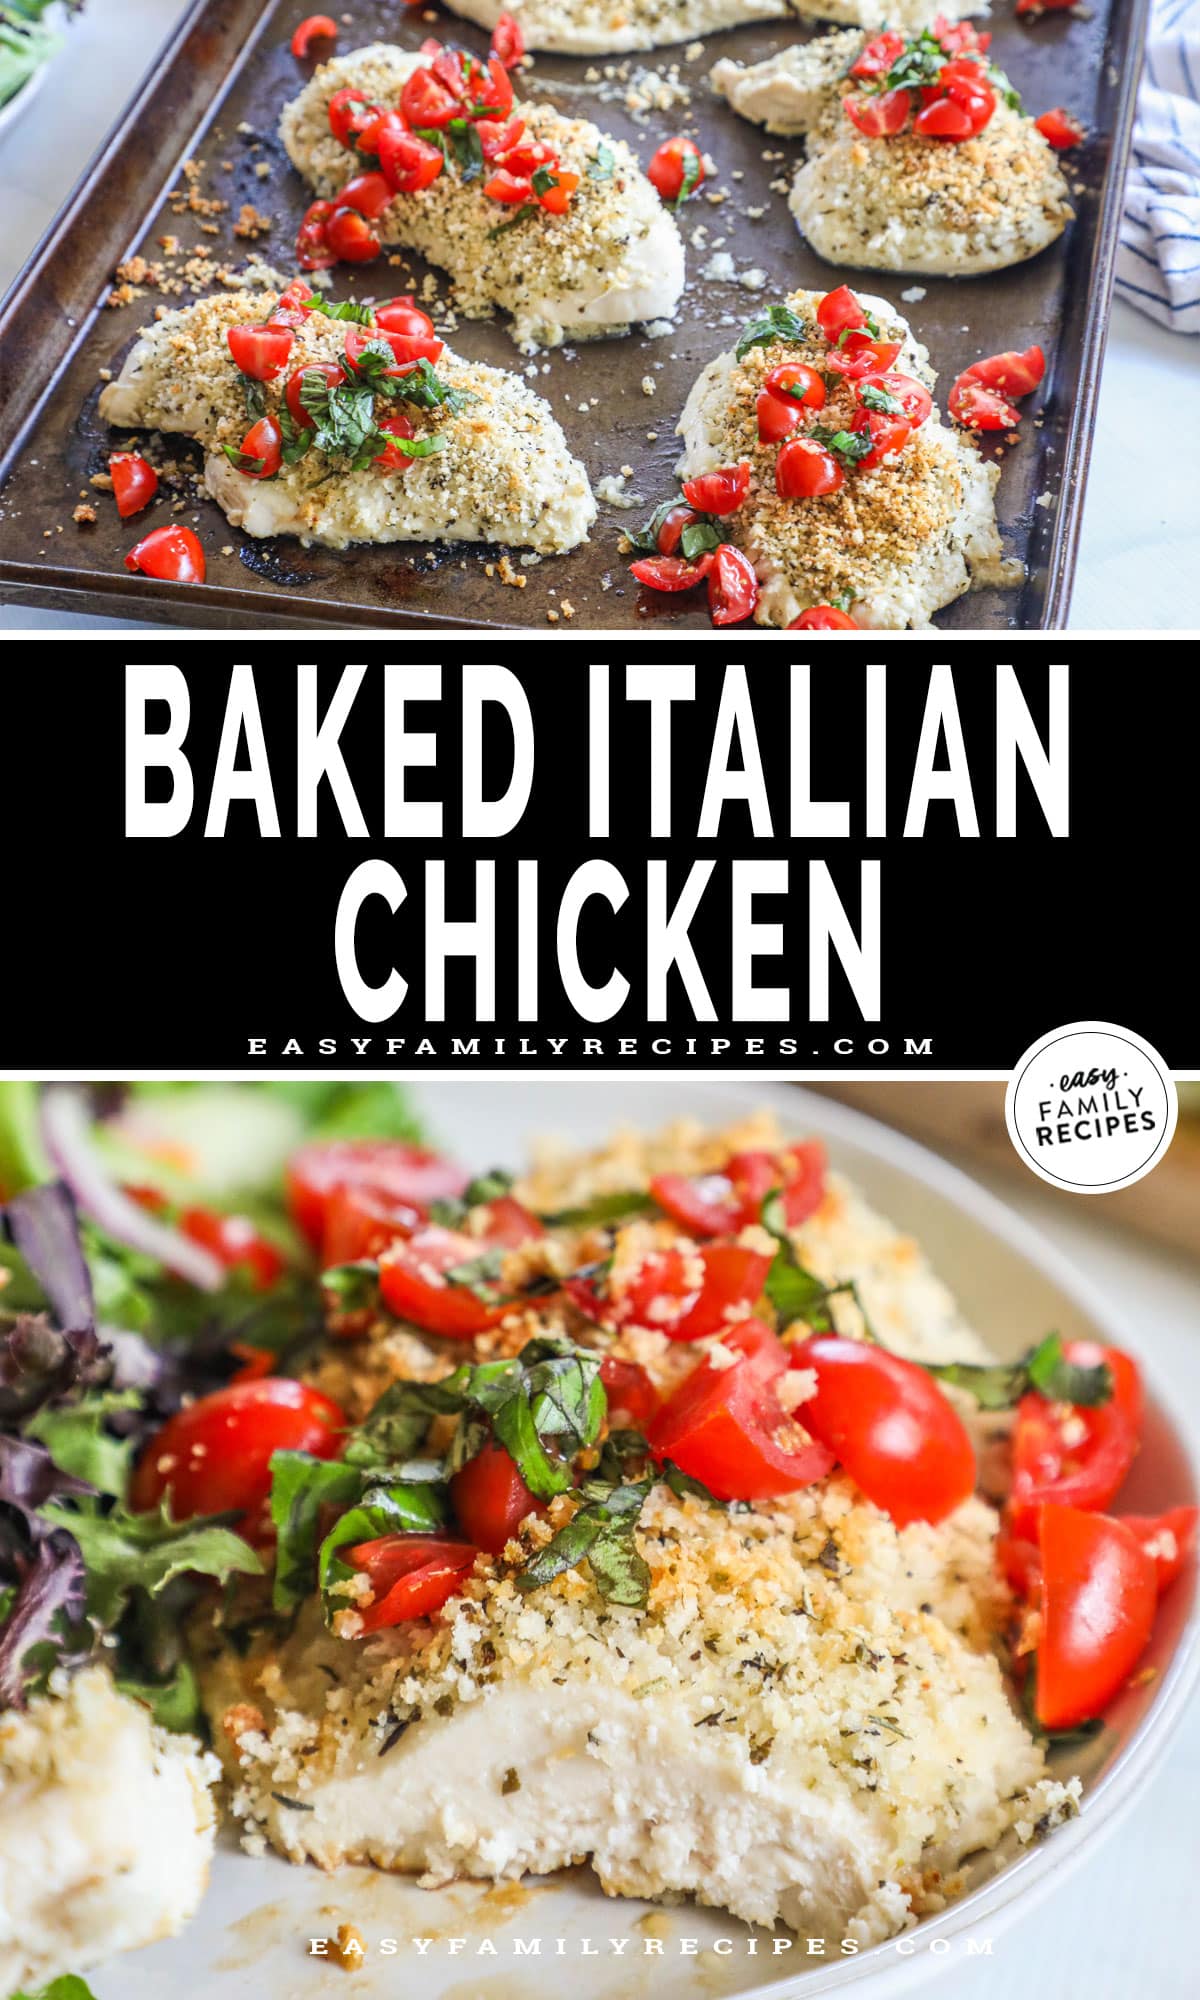 Top photo: Italian baked chicken on sheet pan, bottom photo: Baked Italian chicken on plate